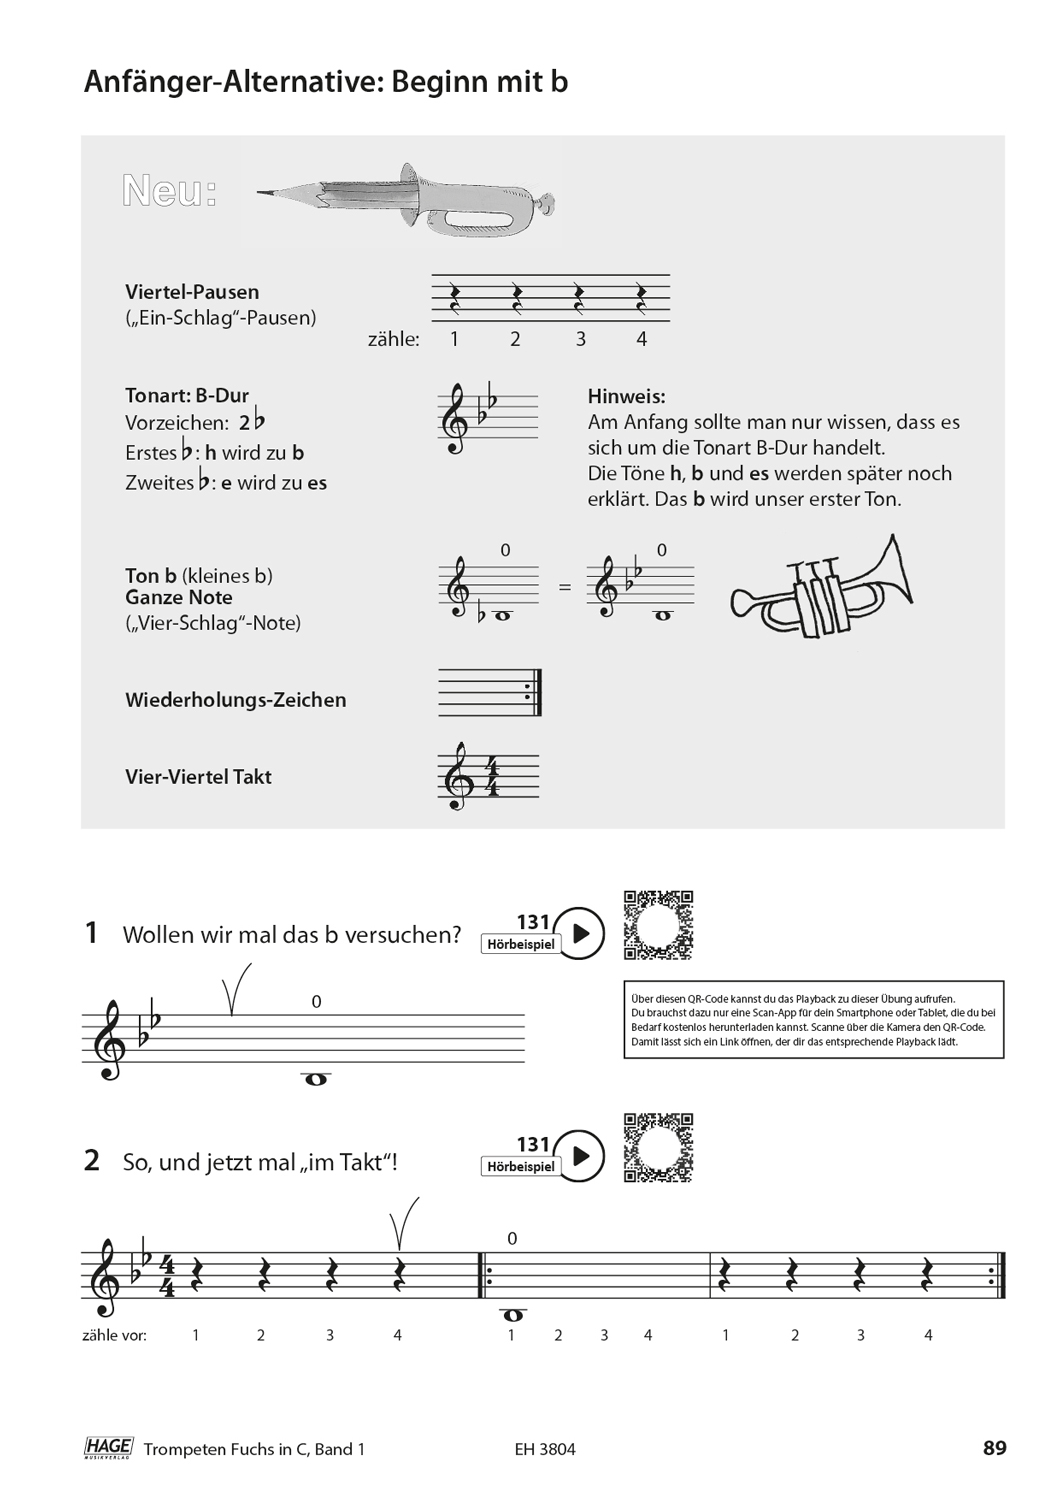 Trompeten Fuchs Band 1 in C für Posaunenchor Seiten 9